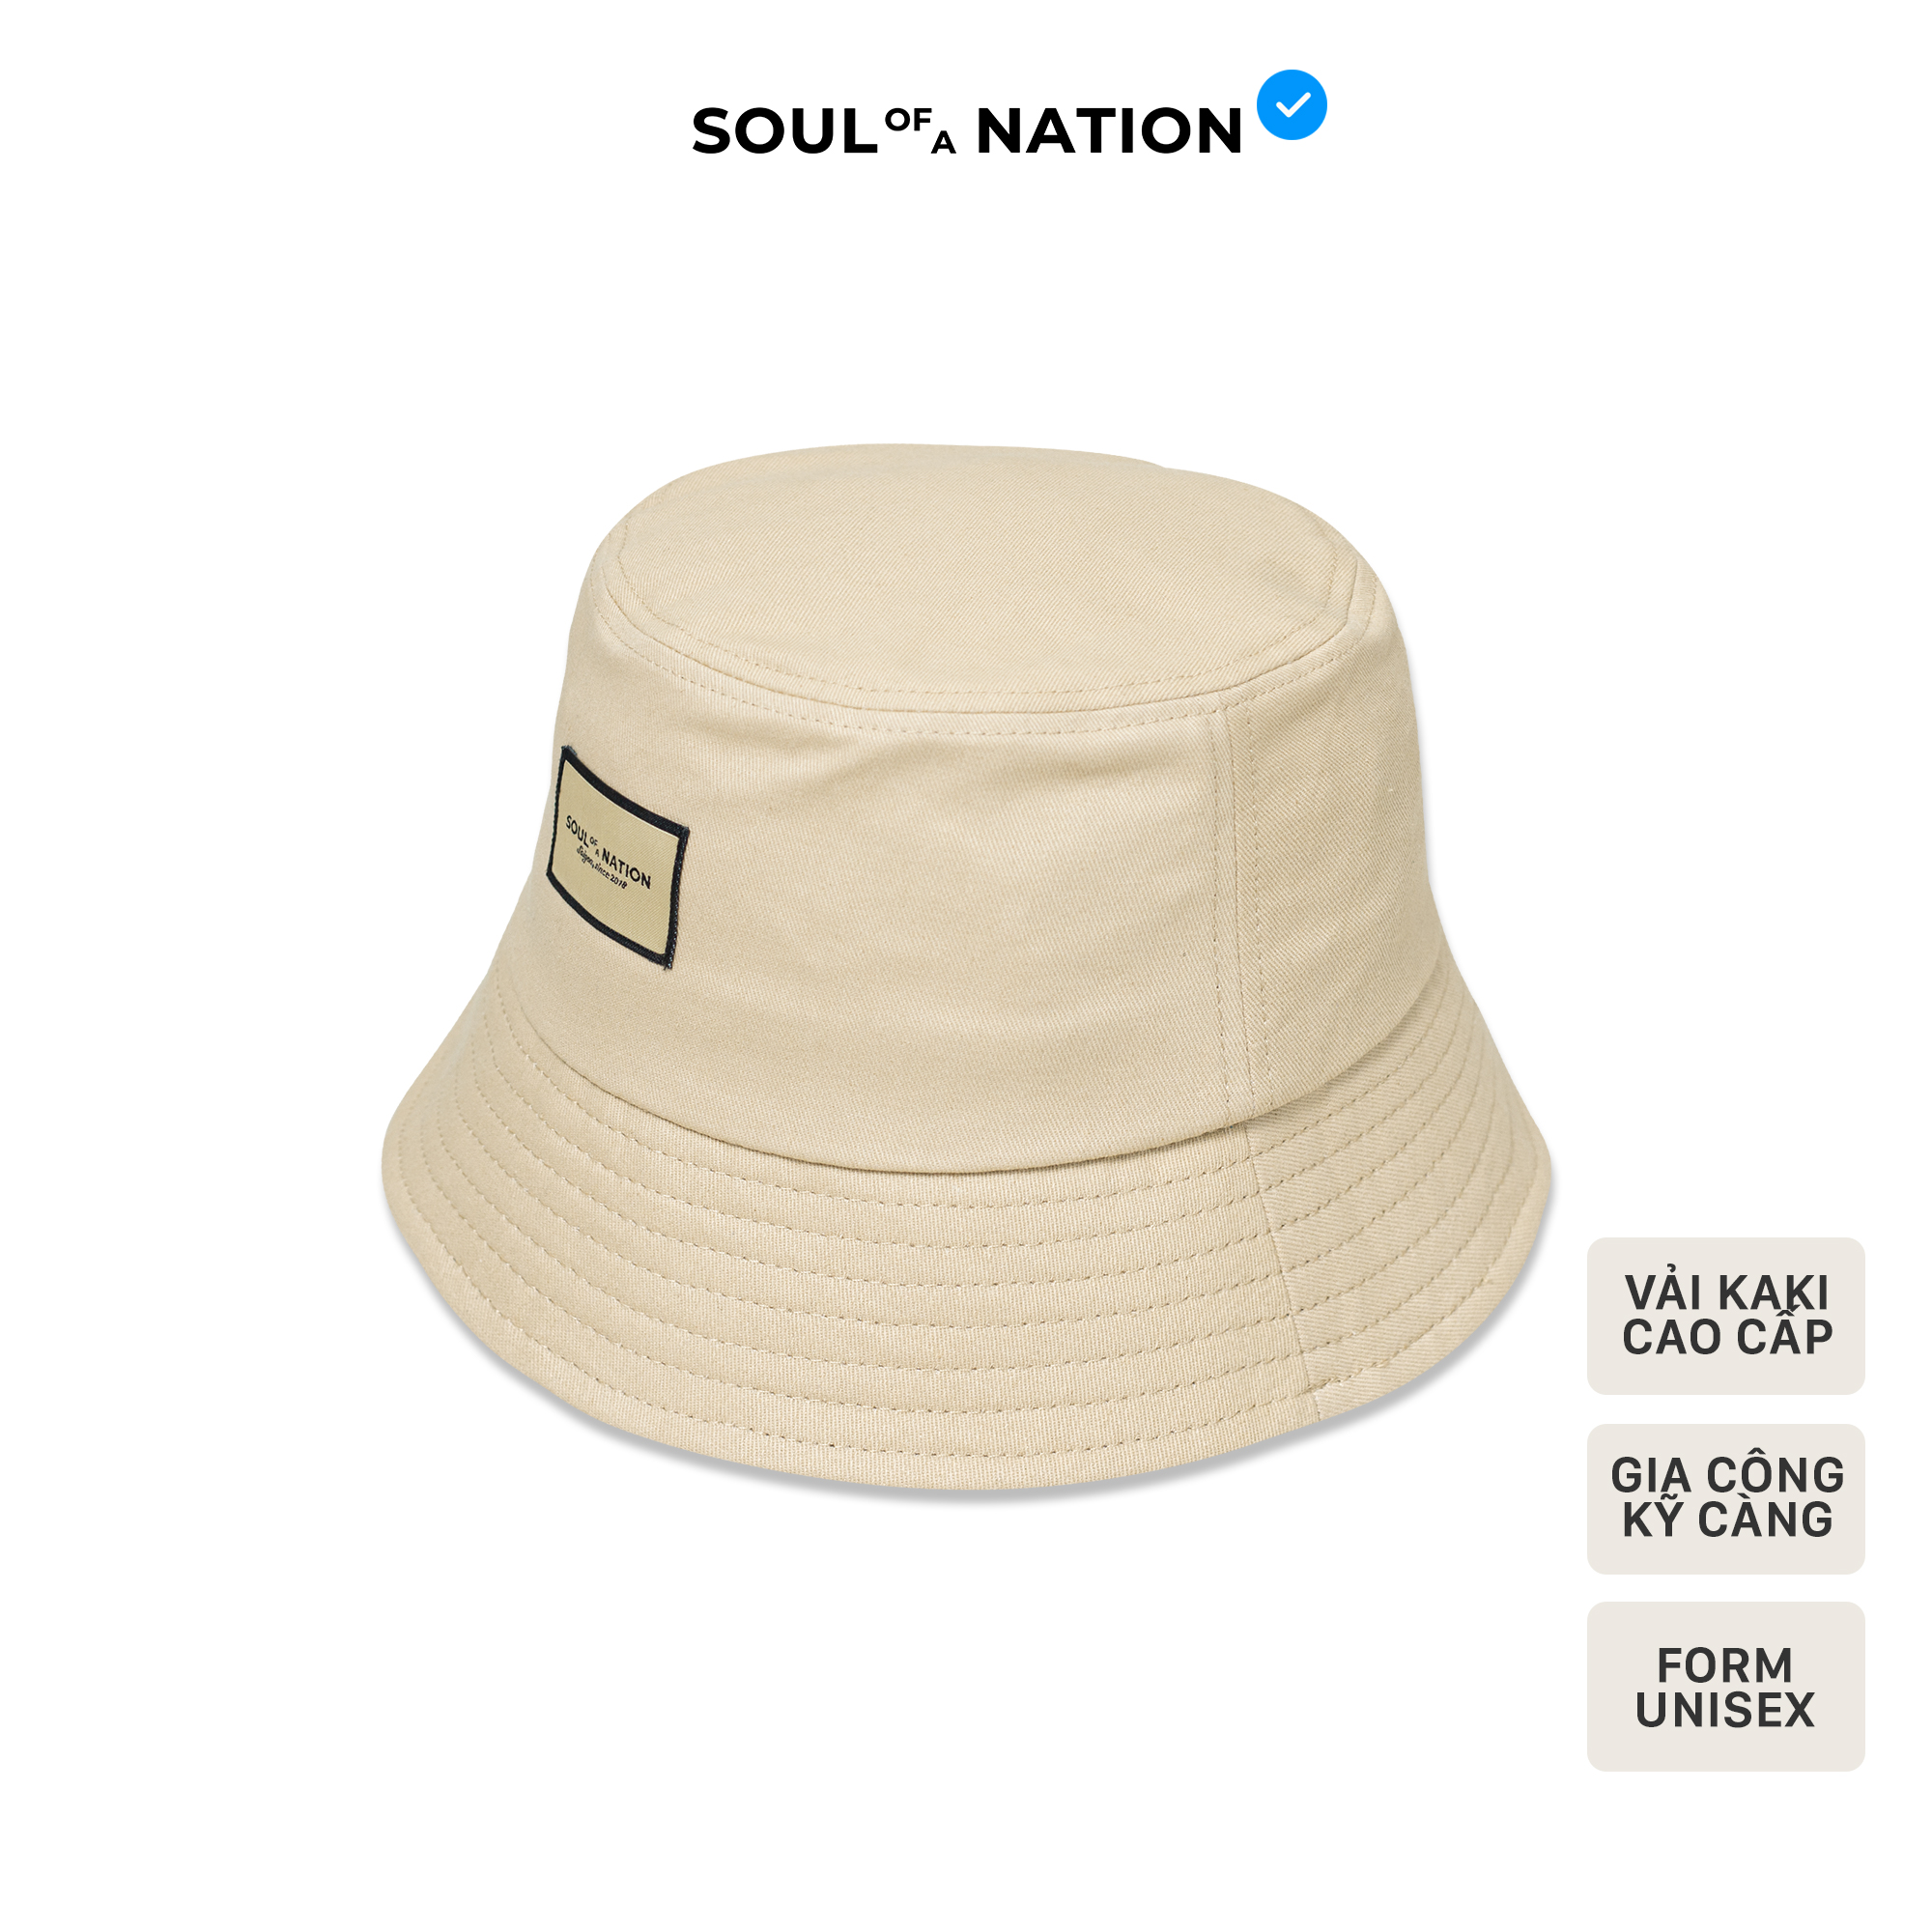 Nón Bucket Trơn - Vành cụp vải Kaki Cotton 100% cao cấp màu Đen/Be - SOUL OF A NATION